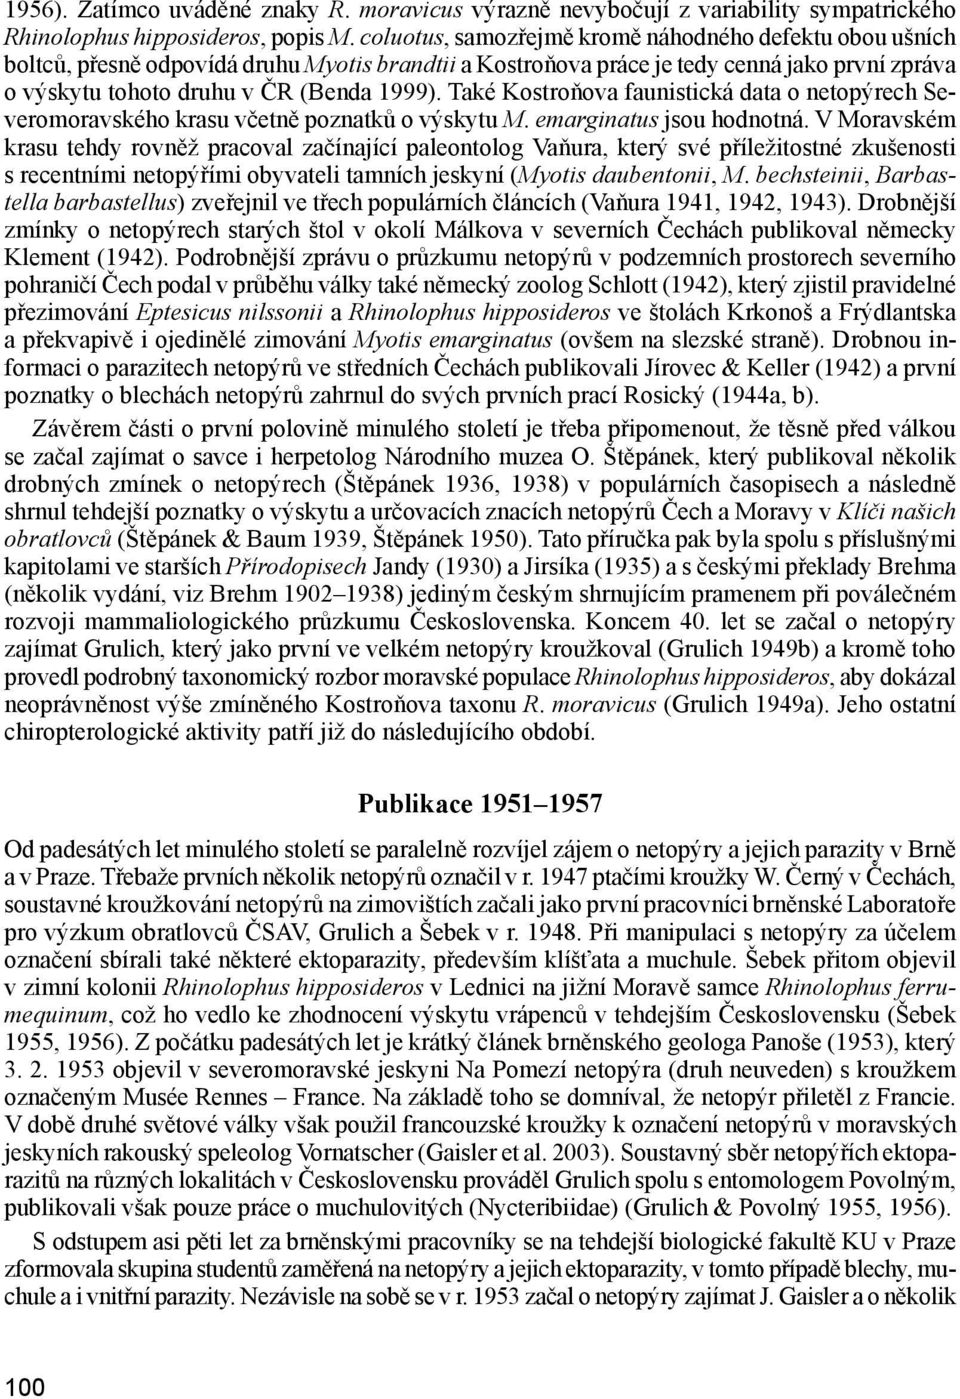 Také Kostroňova faunistická data o netopýrech Severomoravského krasu včetně poznatků o výskytu M. emarginatus jsou hodnotná.